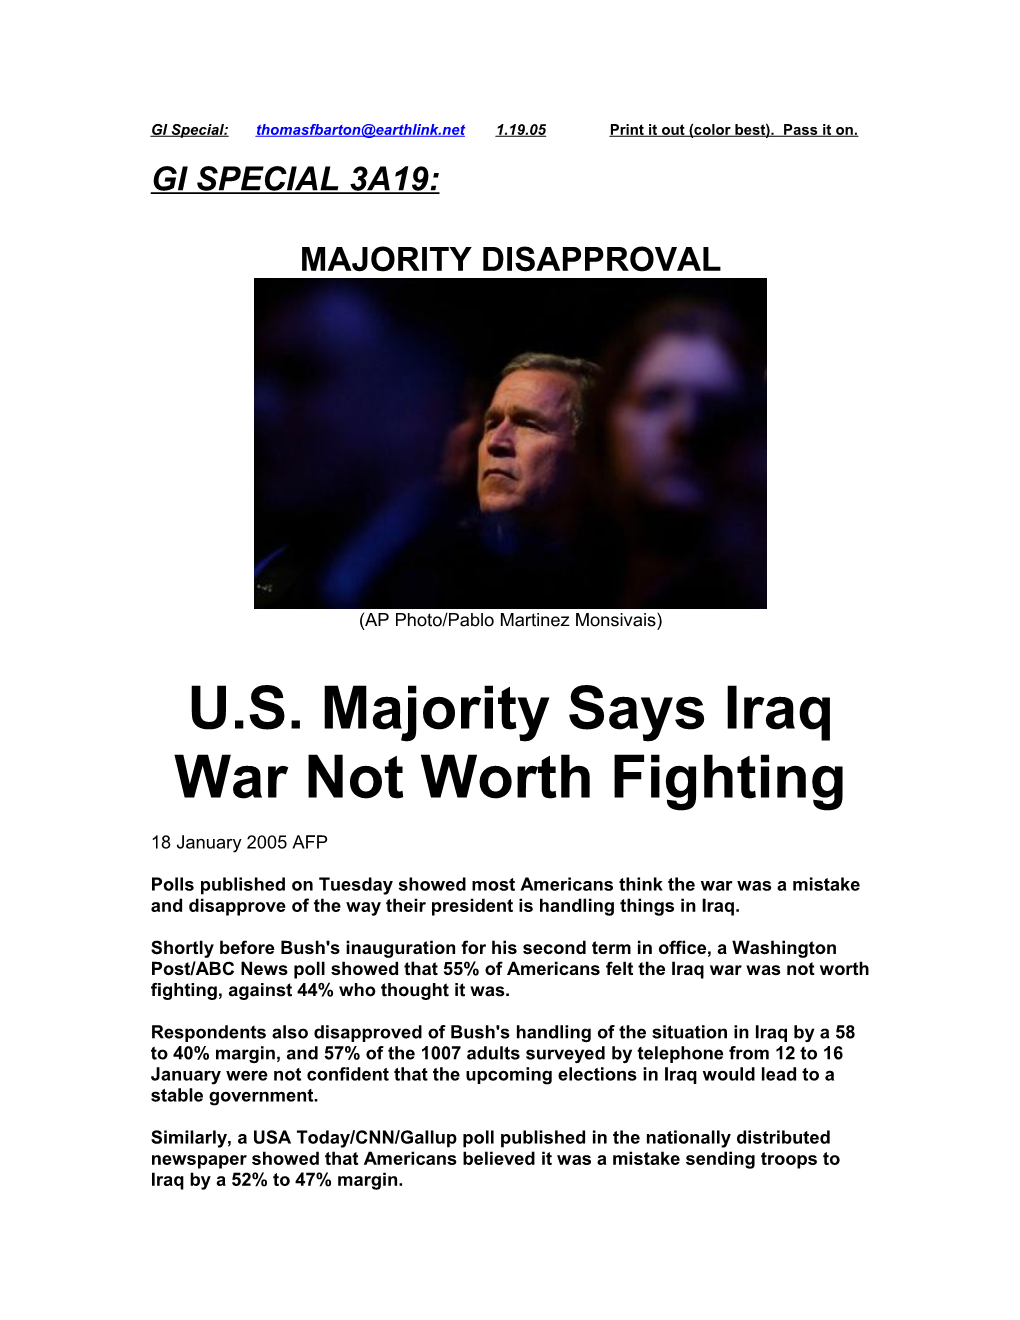 U.S. Majority Says Iraq War Not Worth Fighting